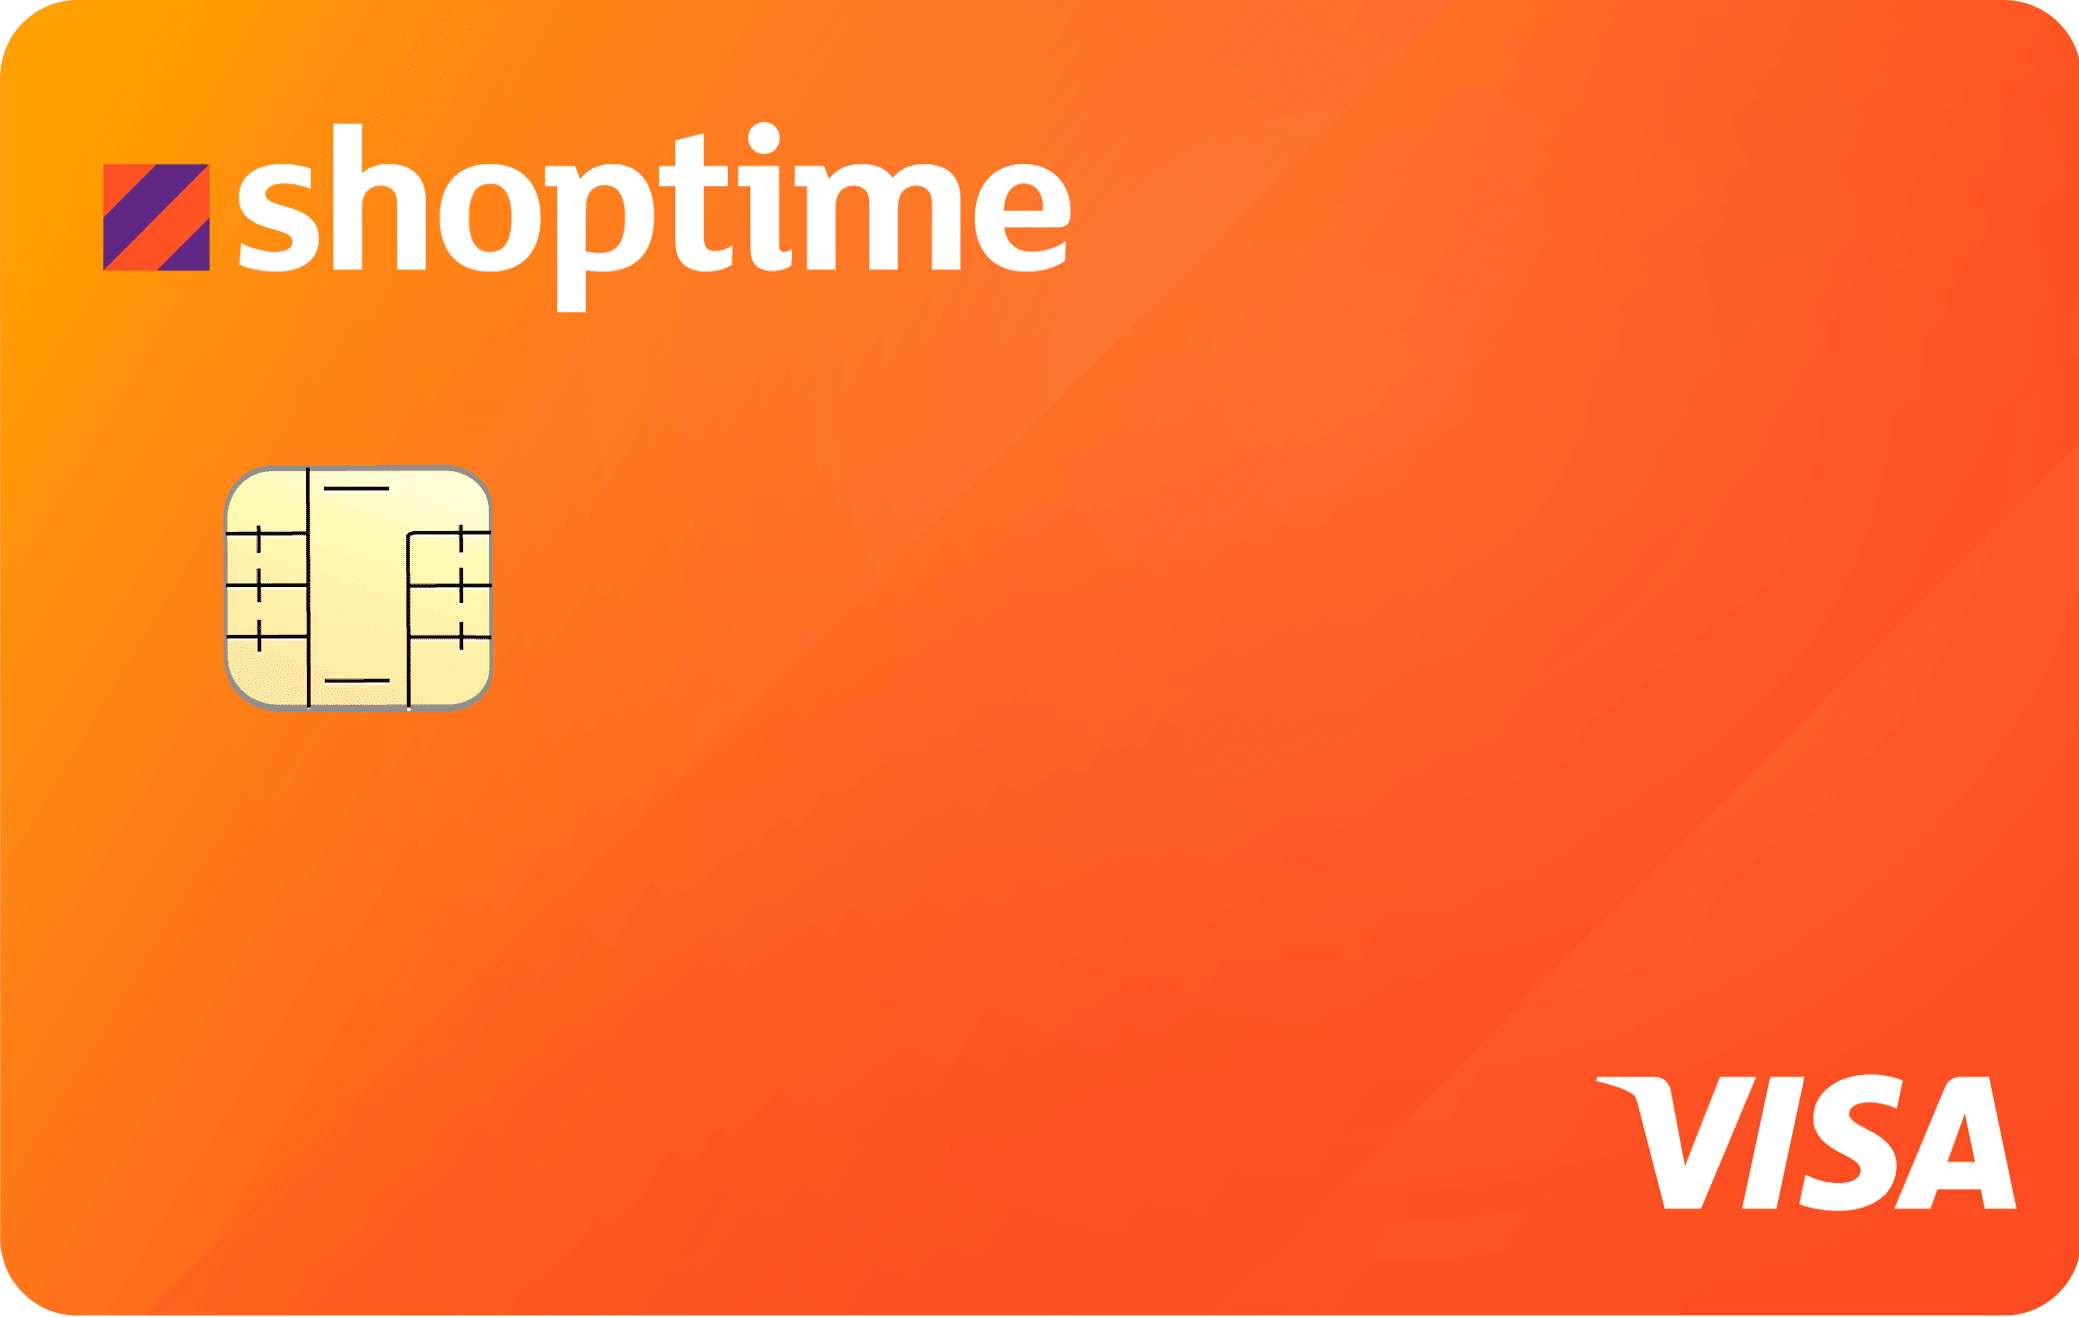 Benefícios do cartão Shoptime. Fonte: Shoptime.